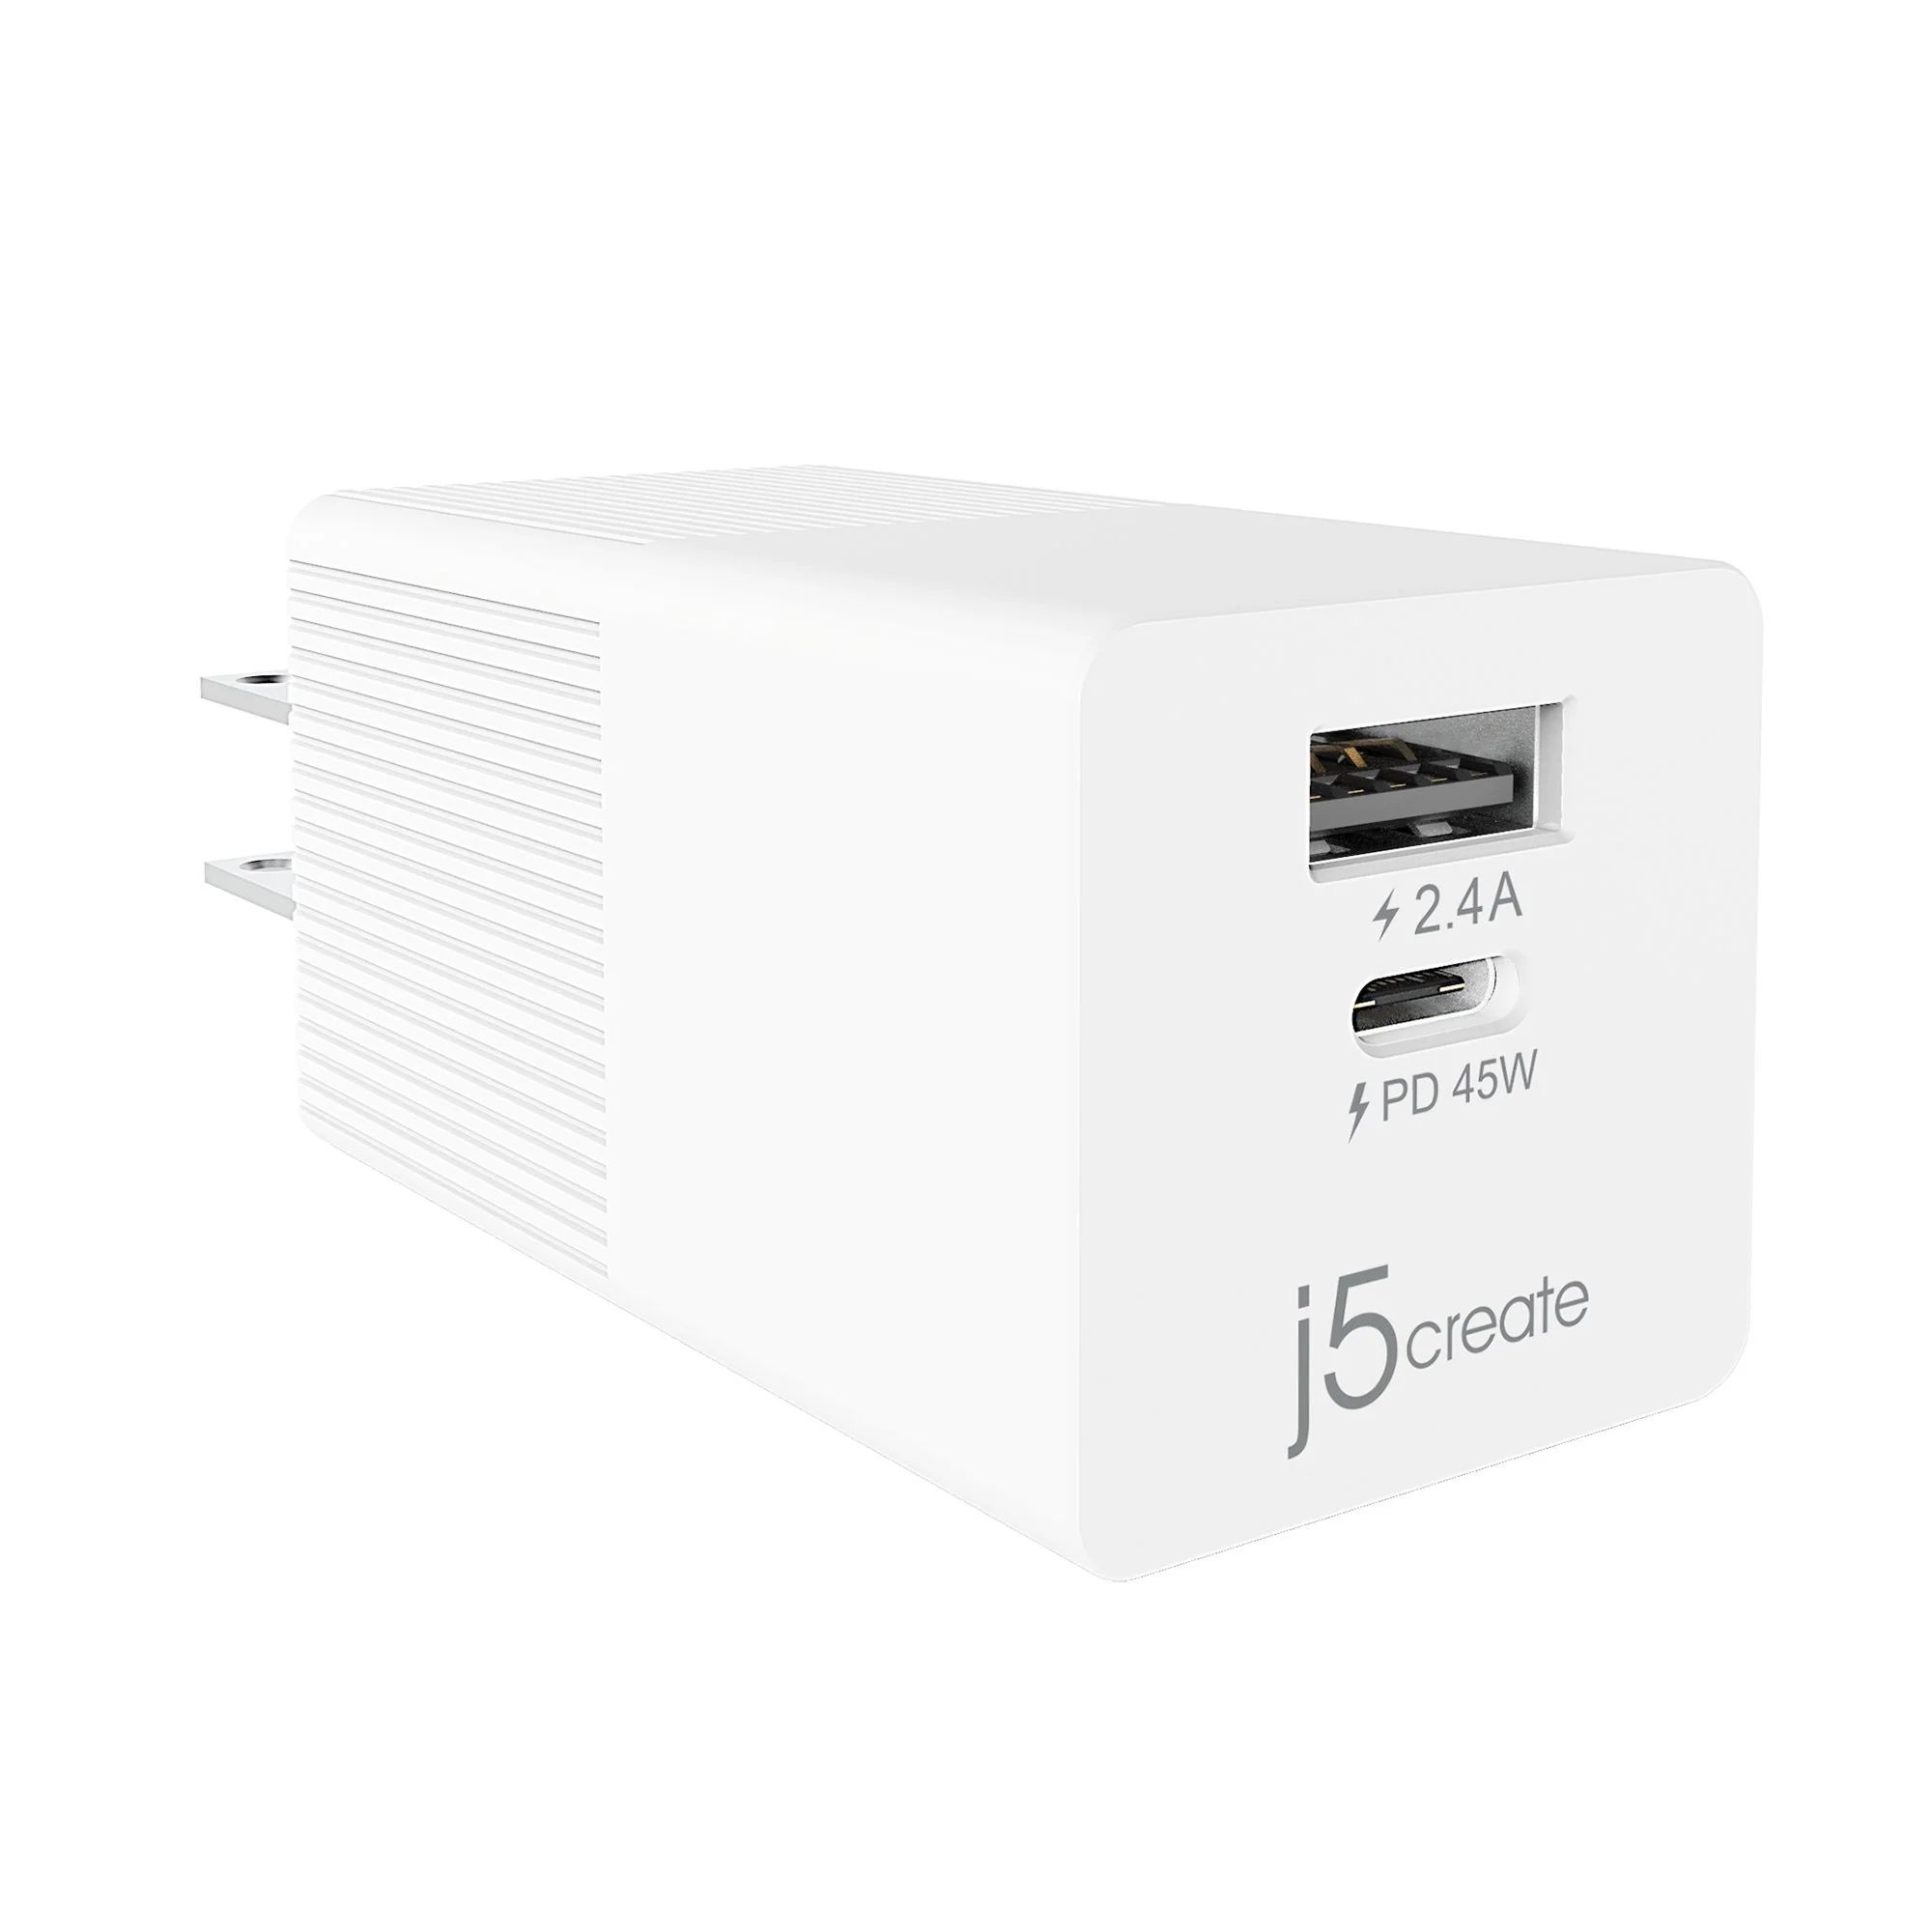 Сетевое зарядное устройство j5create 45W JUP2445 сетевое зарядное устройство j5create jup1365 65 вт белый